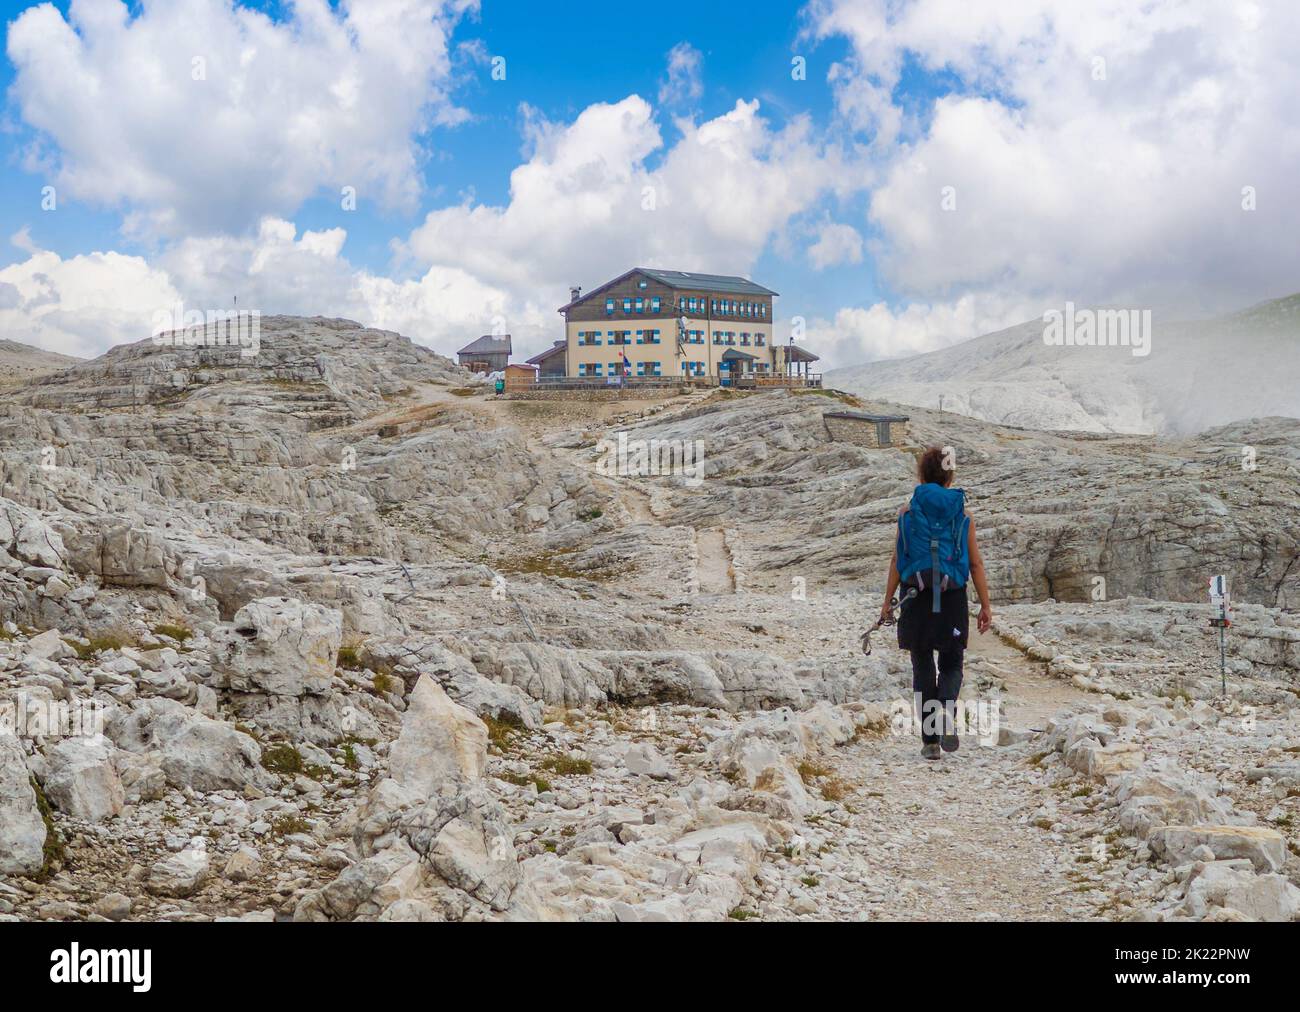 Dolomiti (Italia) - una veduta panoramica della catena montuosa delle Dolomiti, patrimonio mondiale dell'UNESCO, in Veneto e Trentino Alto Adige. Qui gruppo pale di San Martino Foto Stock